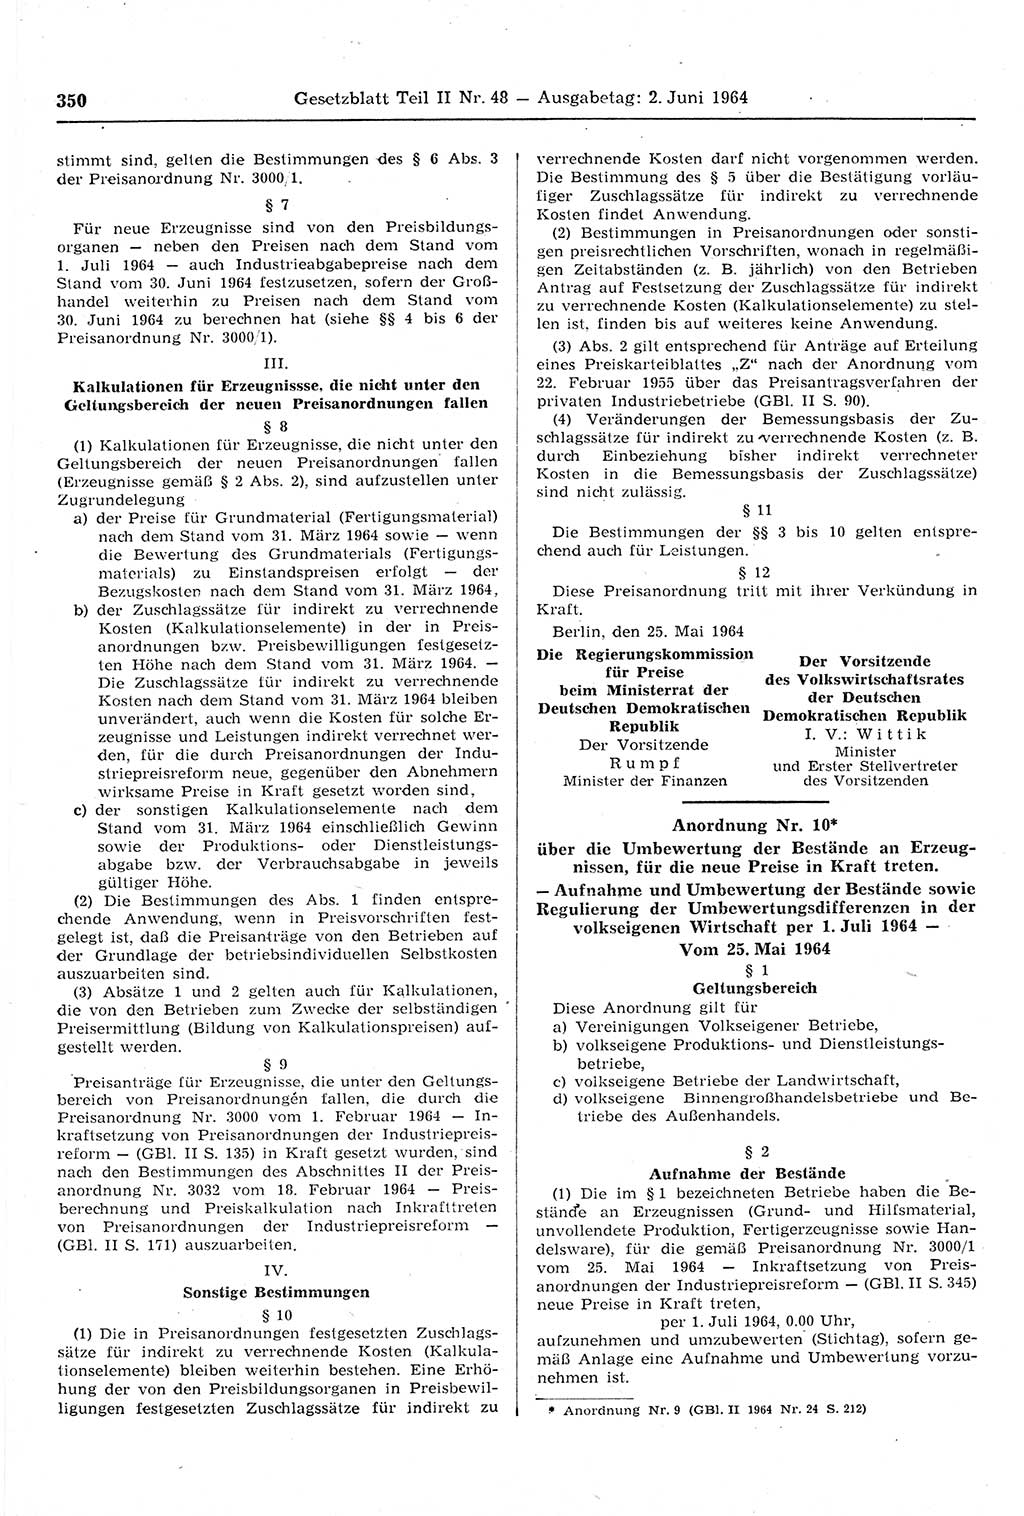 Gesetzblatt (GBl.) der Deutschen Demokratischen Republik (DDR) Teil ⅠⅠ 1964, Seite 350 (GBl. DDR ⅠⅠ 1964, S. 350)